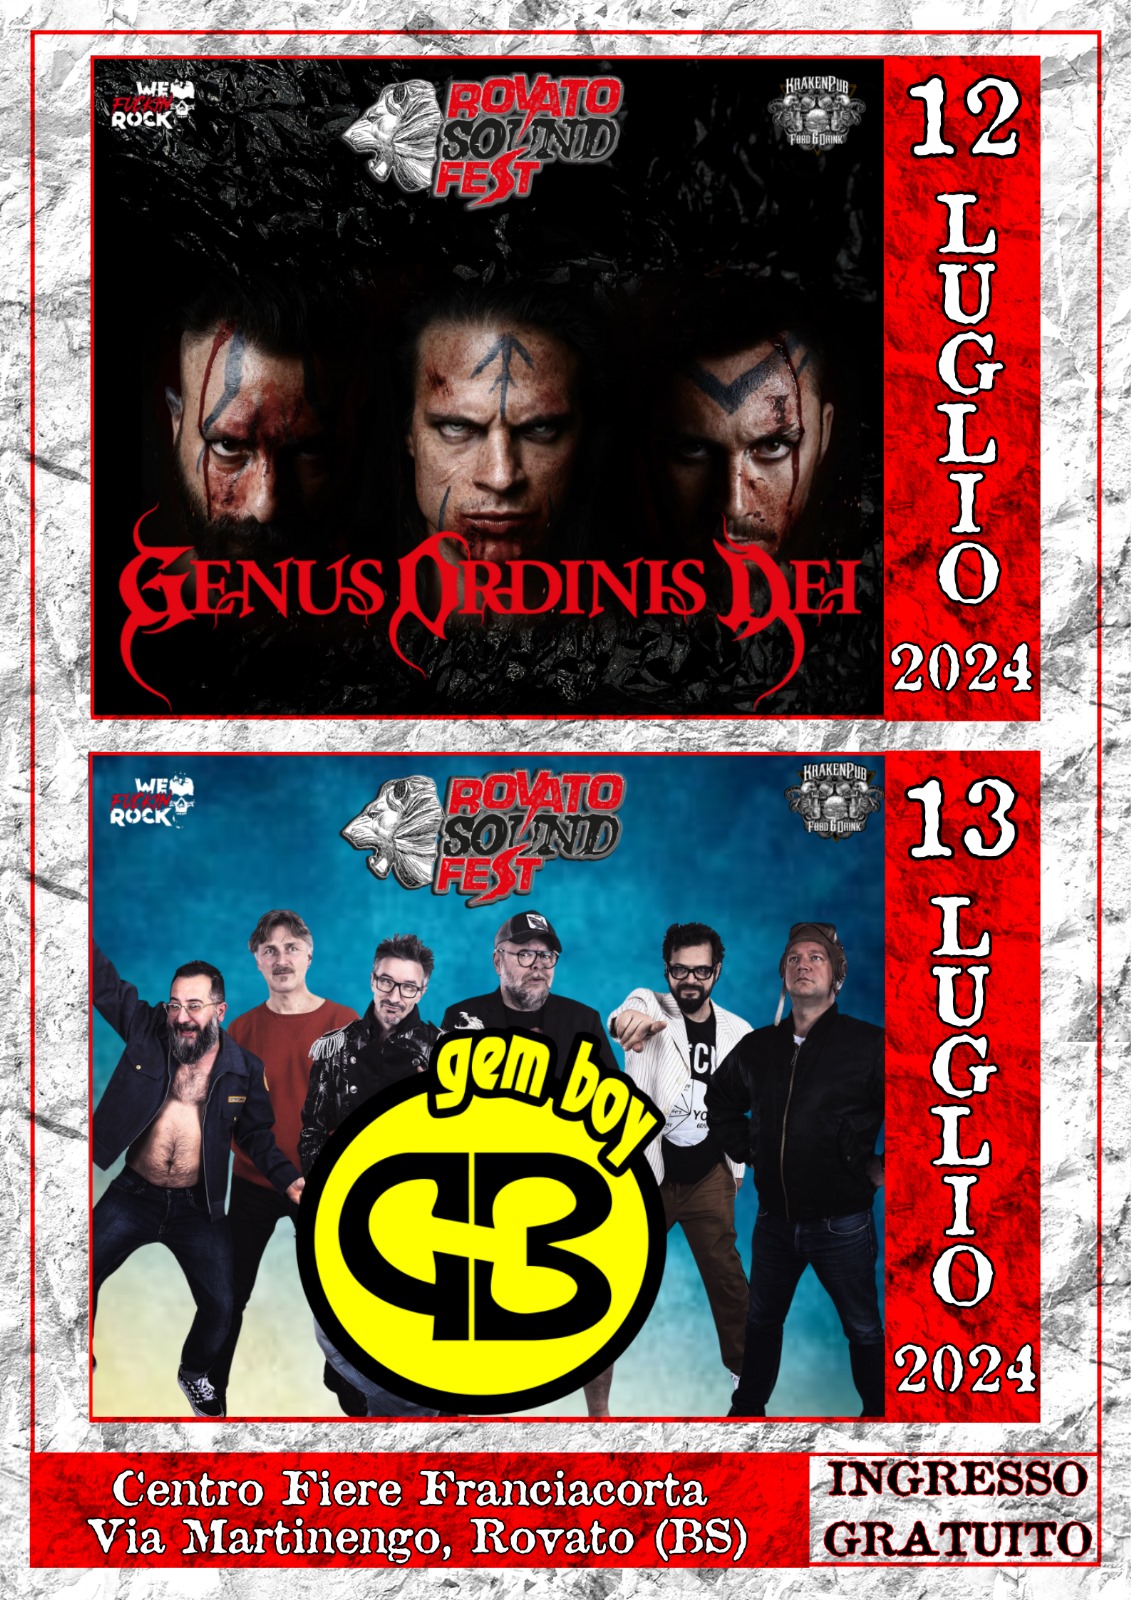 Genus Ordinis Dei e Gem Boy c/o Rovato Sound Fest – ingresso gratuito